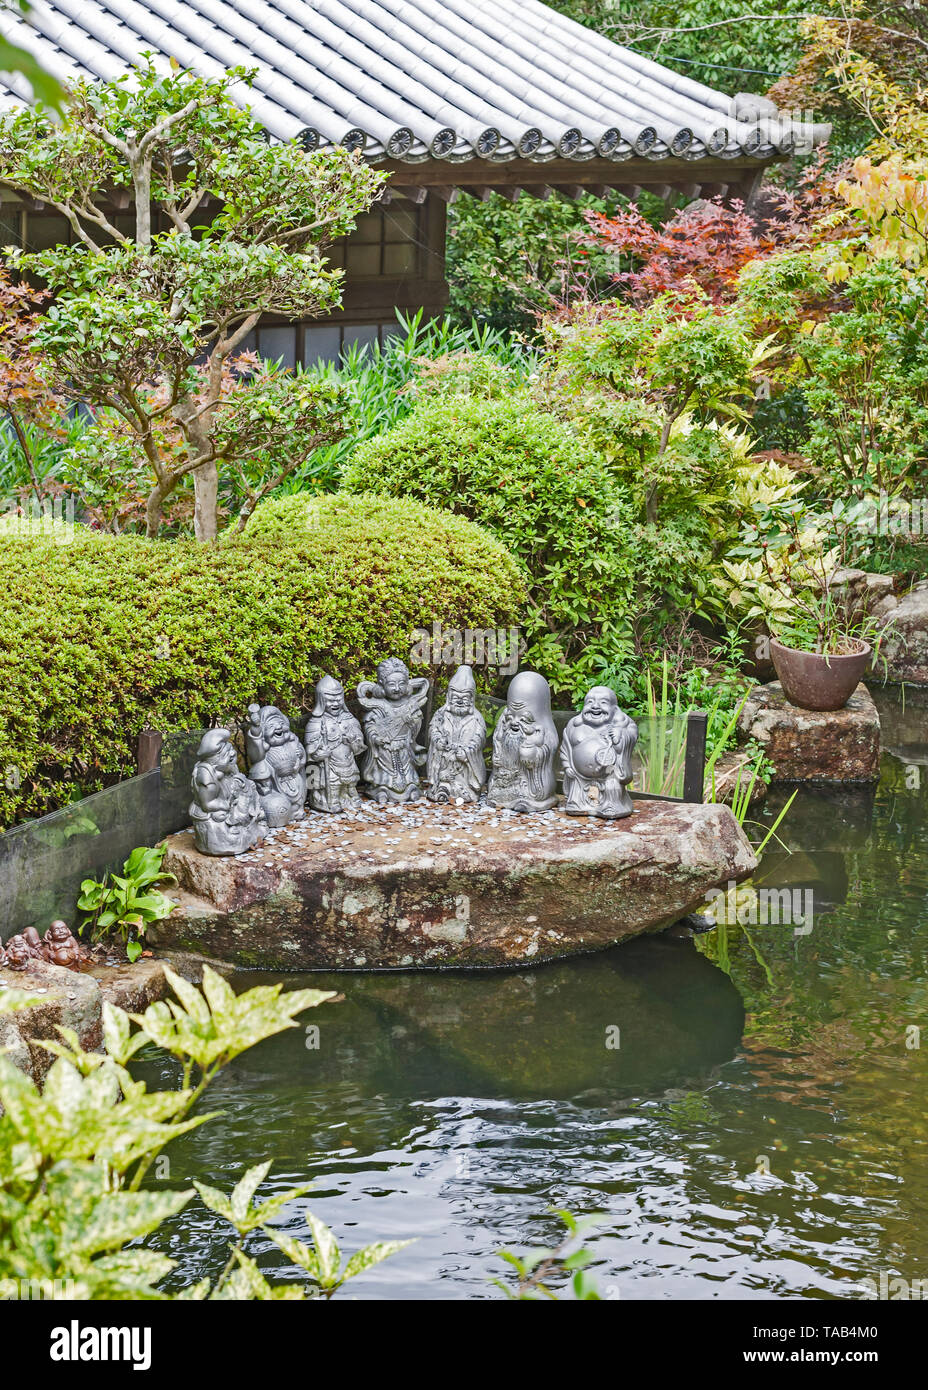 The seven deities of good fortune at the Daishoin temple, Miyajima Island, Japan Stock Photo